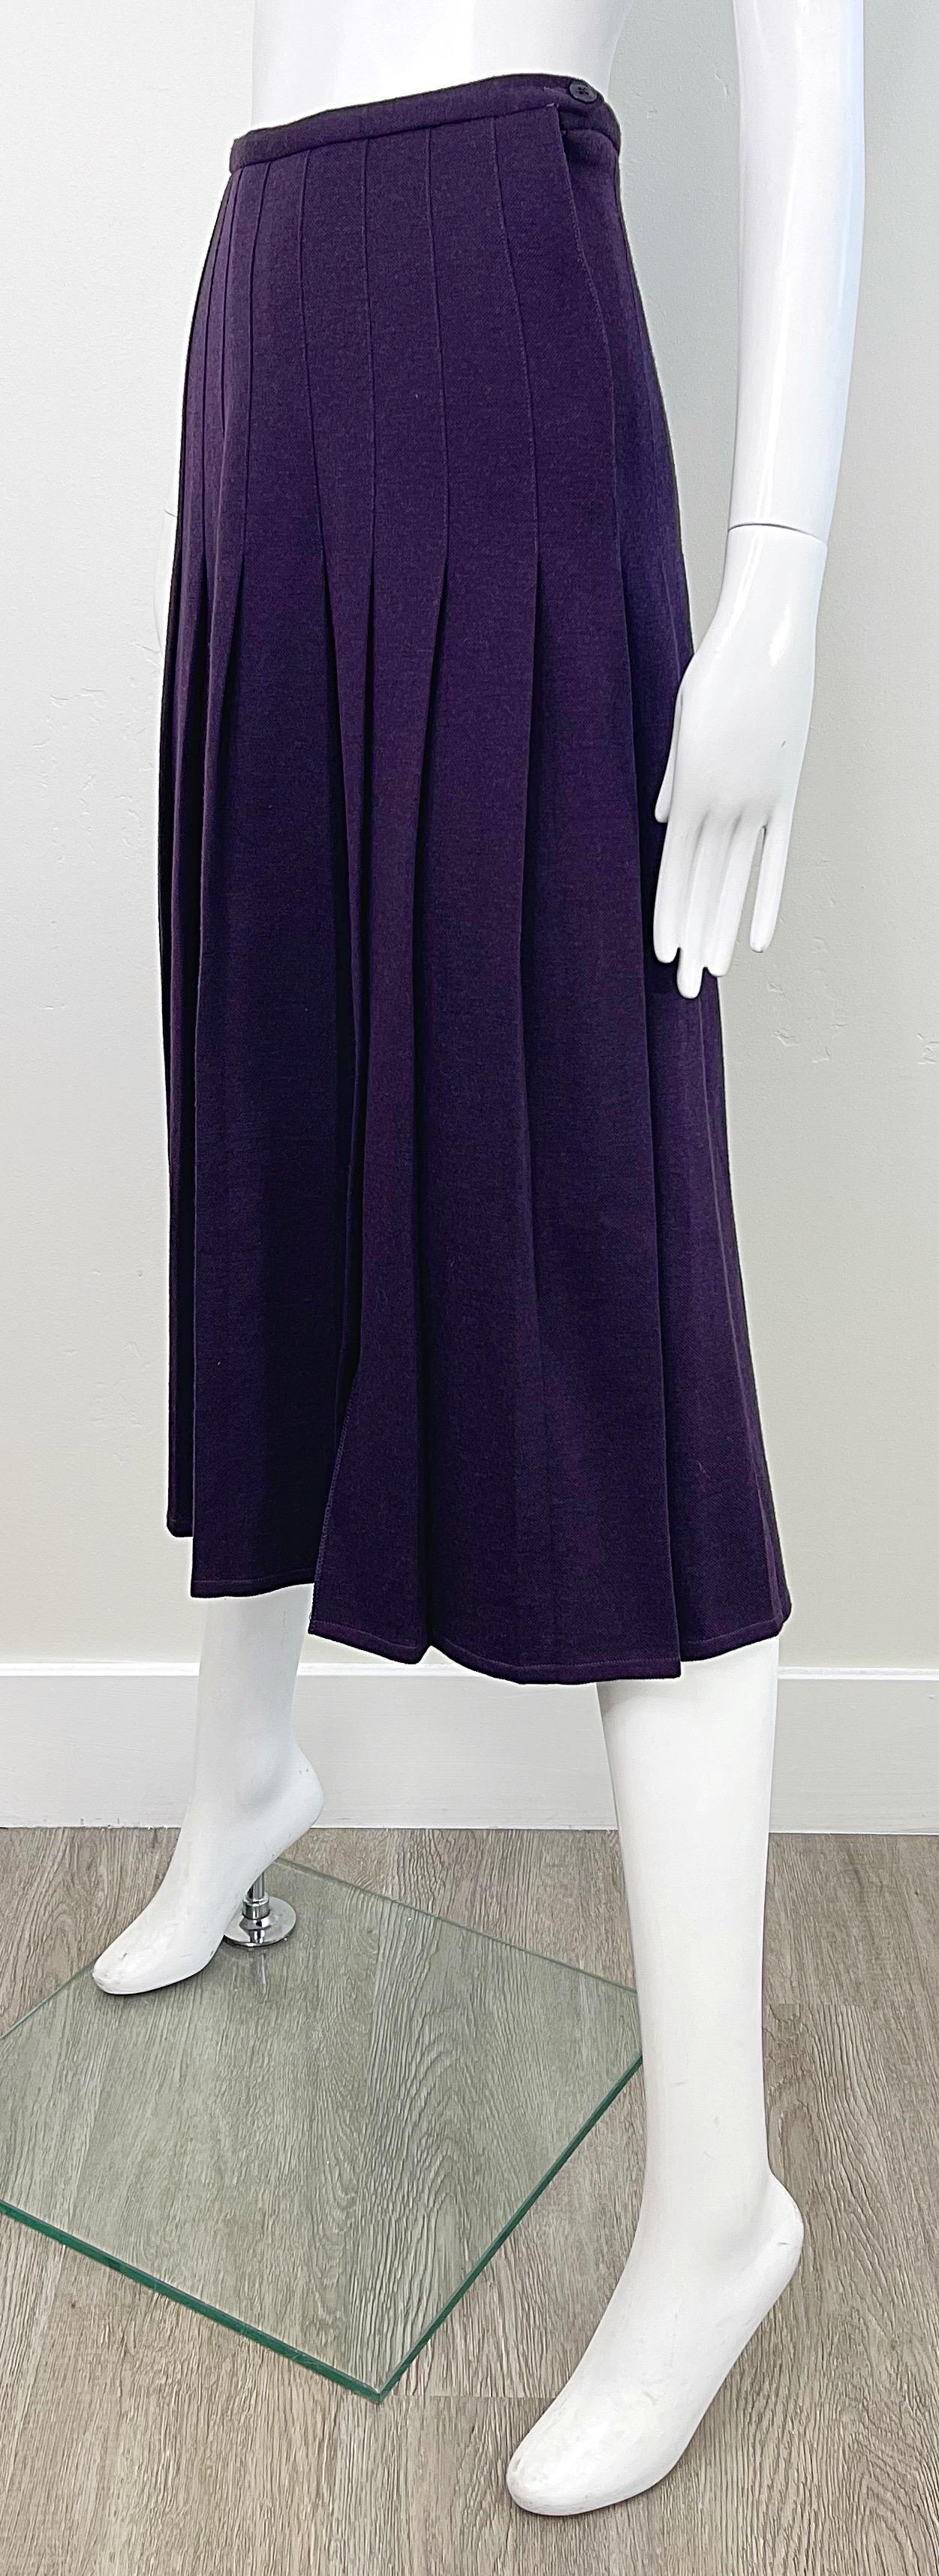 Sonia Rykiel - Jupe midi en laine plissée violette à motif aubergine, vintage, années 1970 Pour femmes en vente